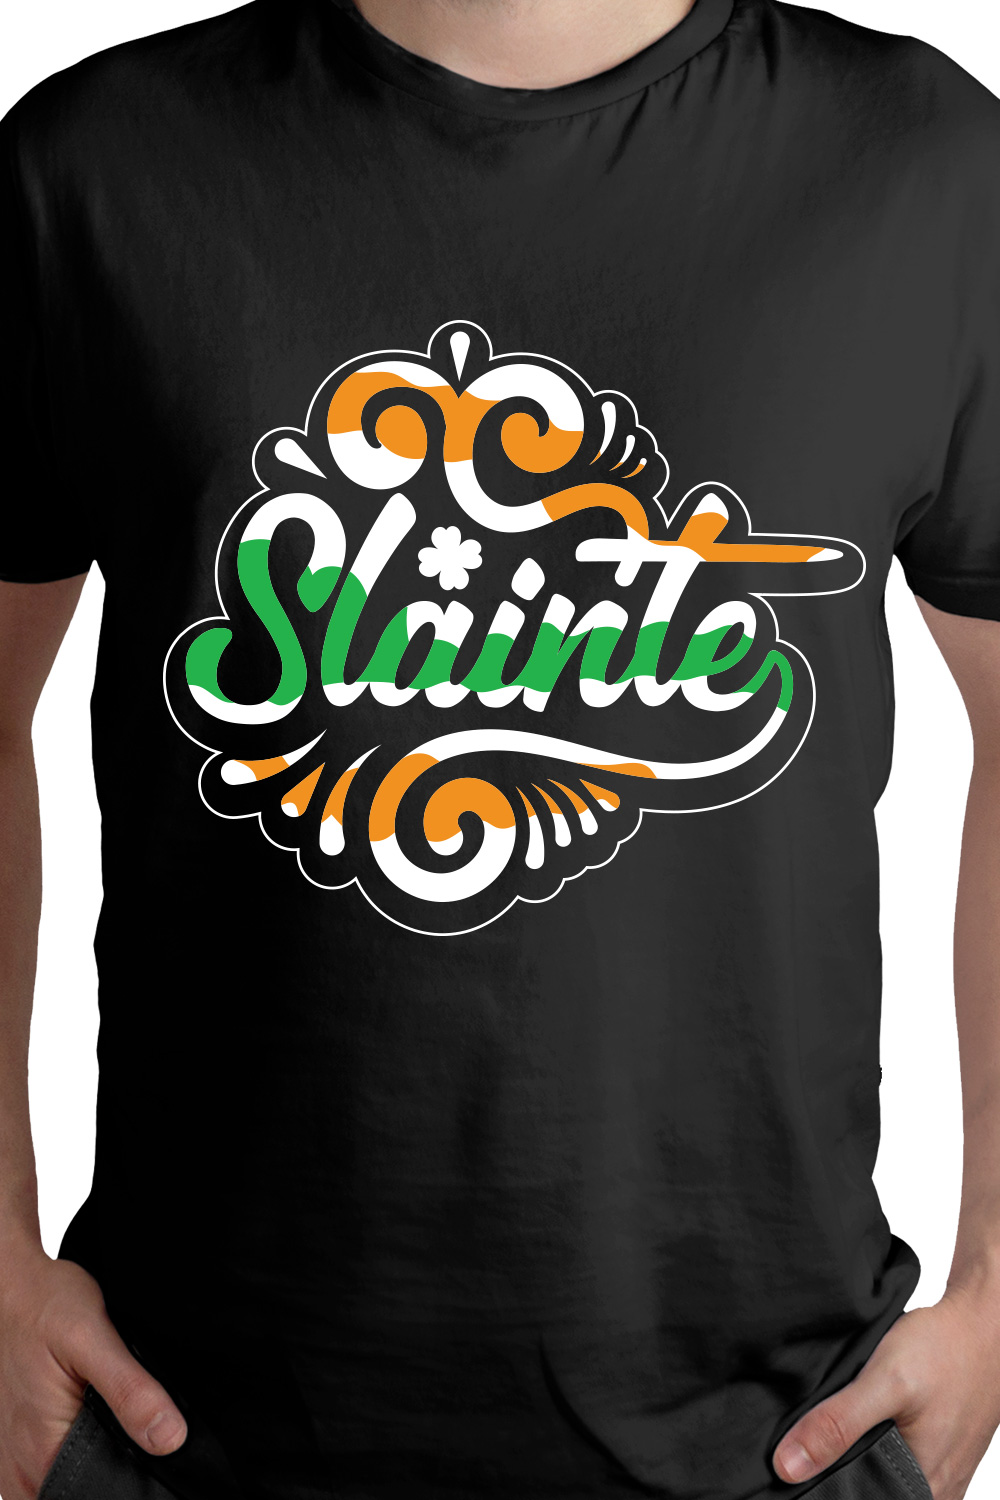 Slainte St Patrick's day t-shirt design pinterest preview image.